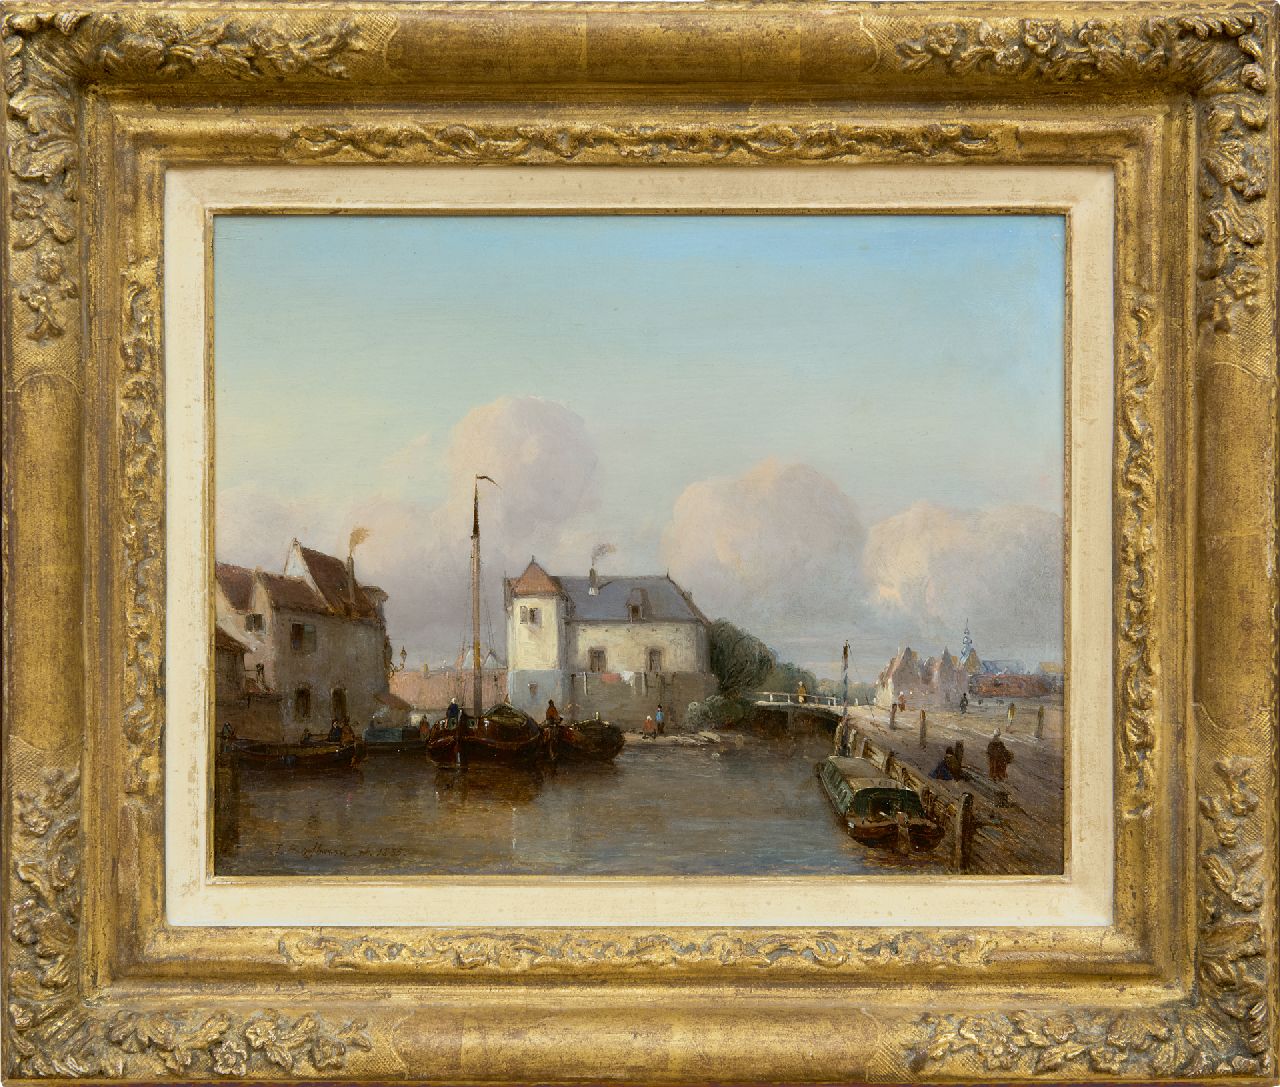 Bosboom J.  | Johannes Bosboom | Schilderijen te koop aangeboden | Hollandse binnenhaven, olieverf op paneel 24,8 x 31,7 cm, gesigneerd linksonder en gedateerd 1835